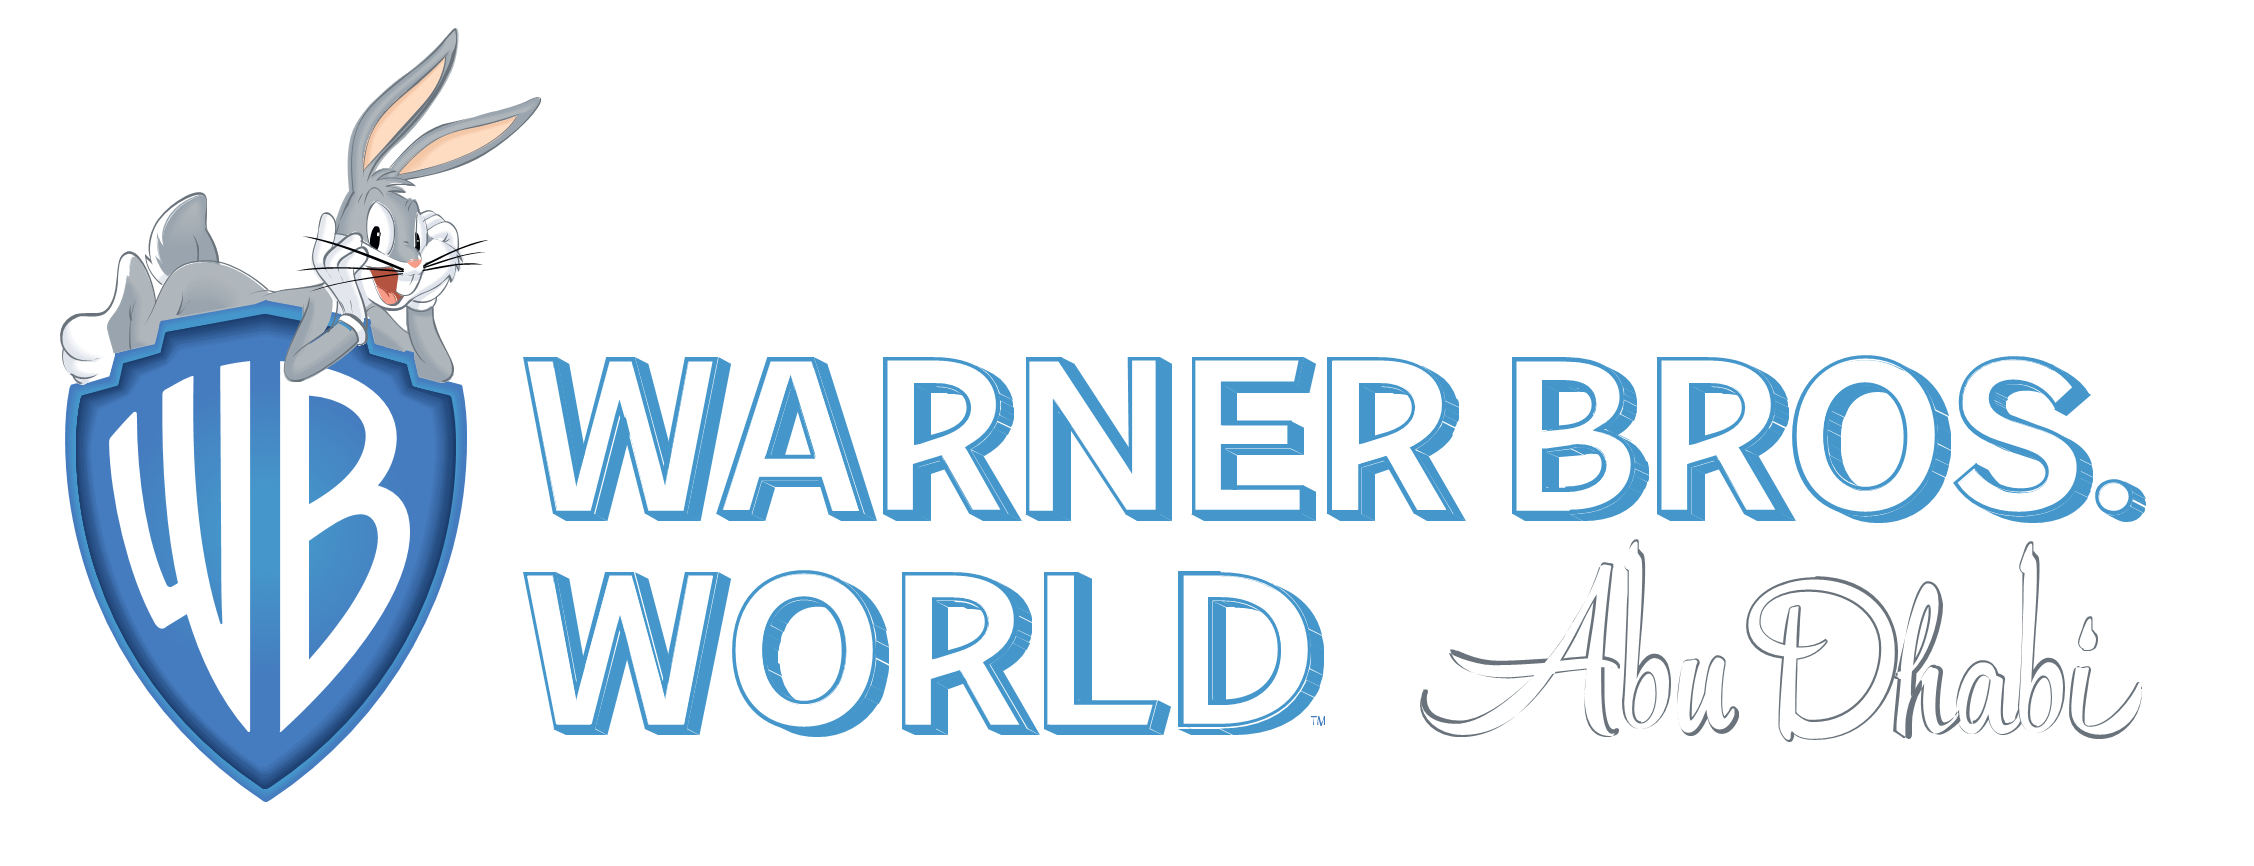 Parque Warner Madrid, Warner Bros. Entertainment Wiki